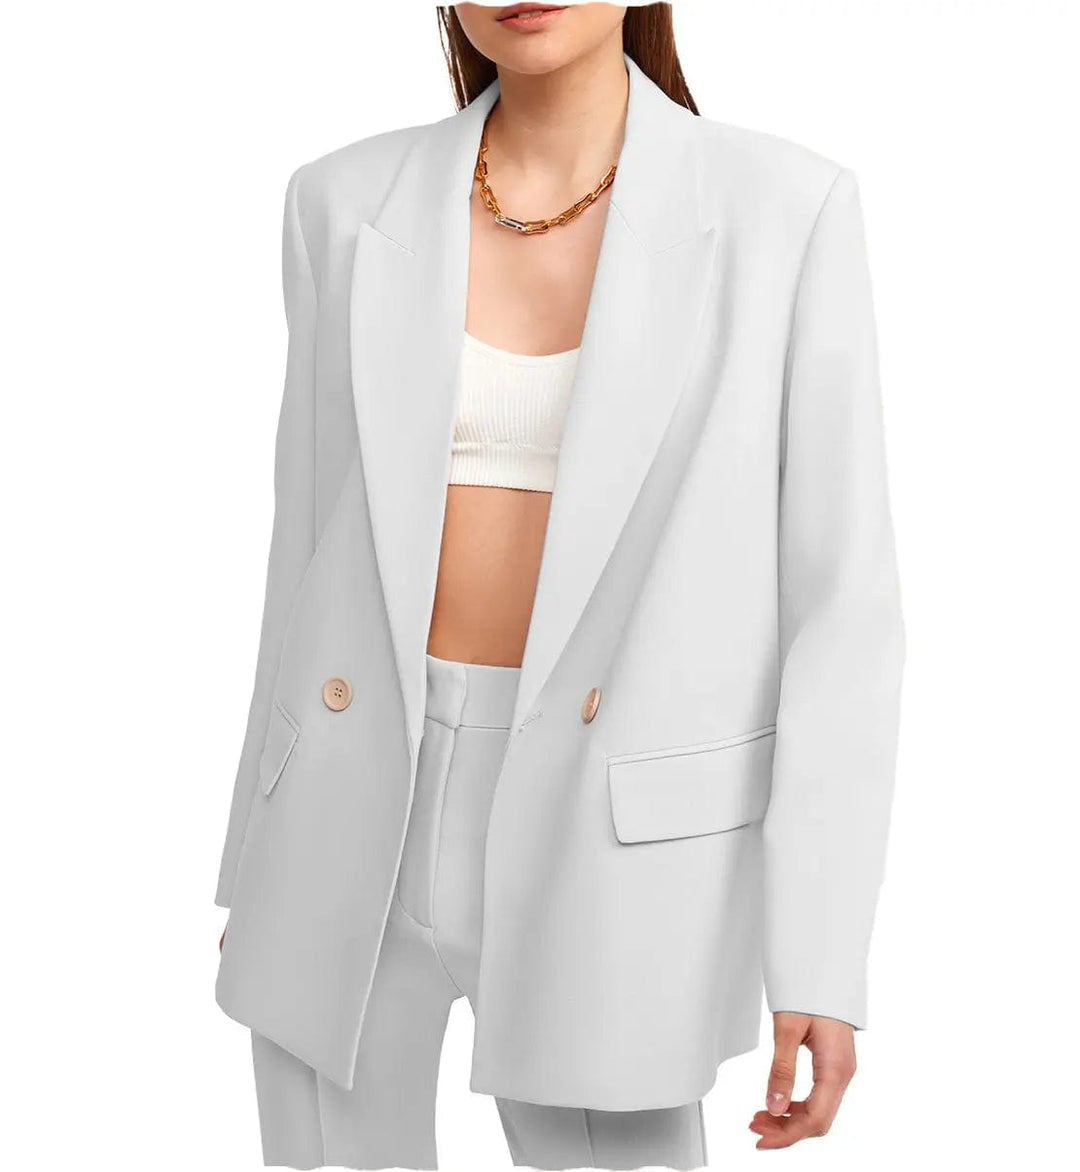 solovedress Women Suit 2 Pieces Peak Lapel Blazer